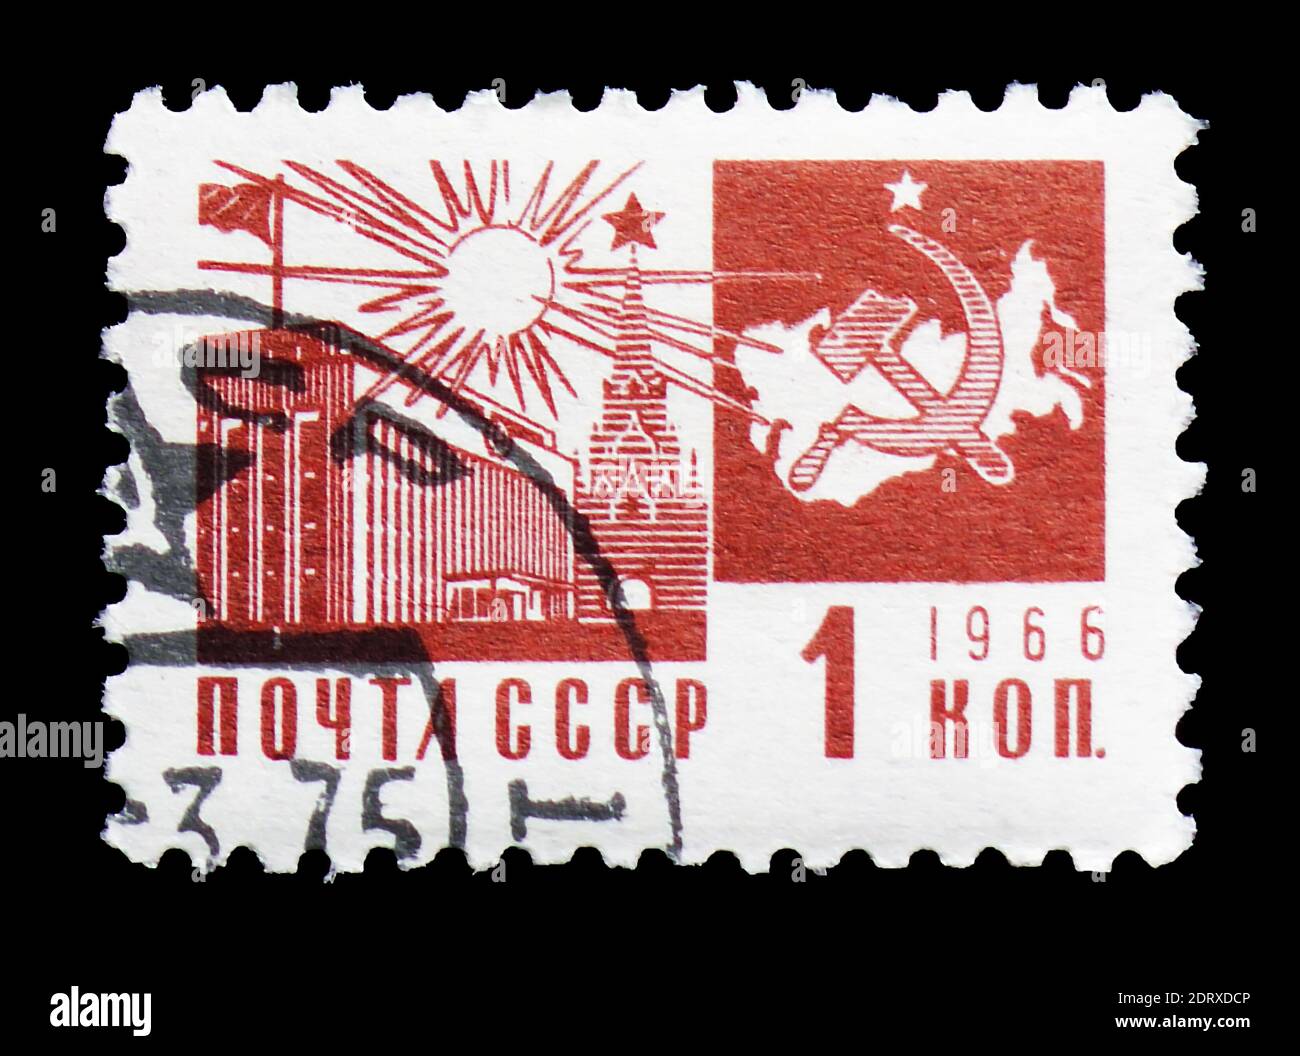 MOSCA, RUSSIA - 14 FEBBRAIO 2019: Un francobollo stampato in URSS (Russia) mostra il Palazzo dei Congressi nella serie Cremlino, Società e tecnologia, intorno al 1966 Foto Stock